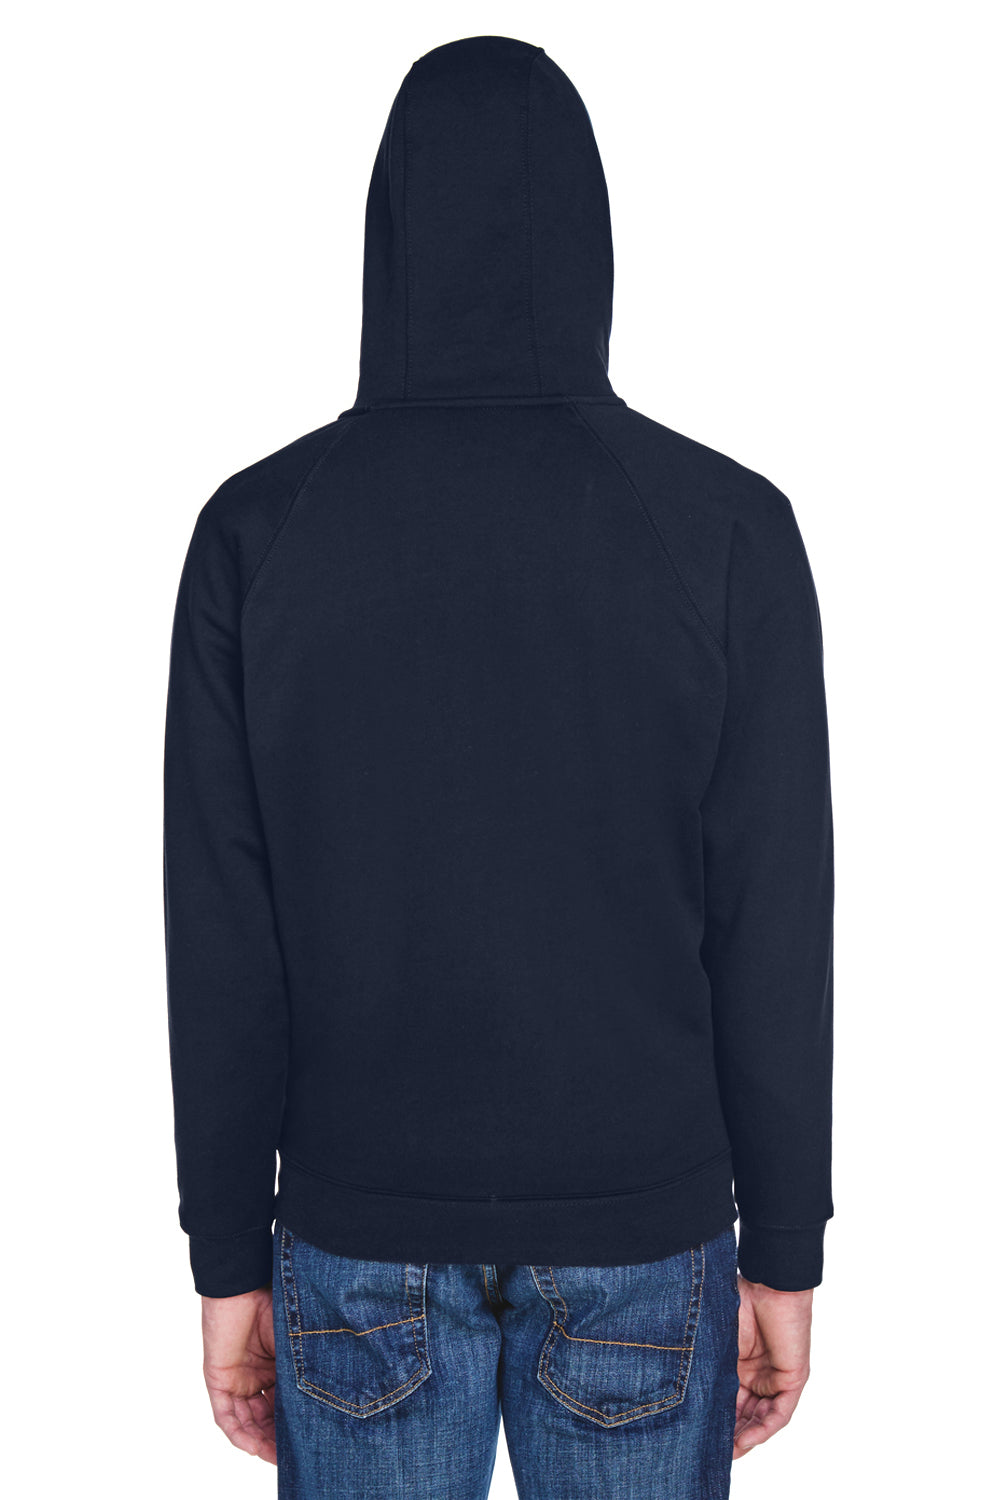 UltraClub 8463 Mens Rugged Wear Water Resistant Fleece Full Zip Hooded Sweatshirt Hoodie Navy Blue Back